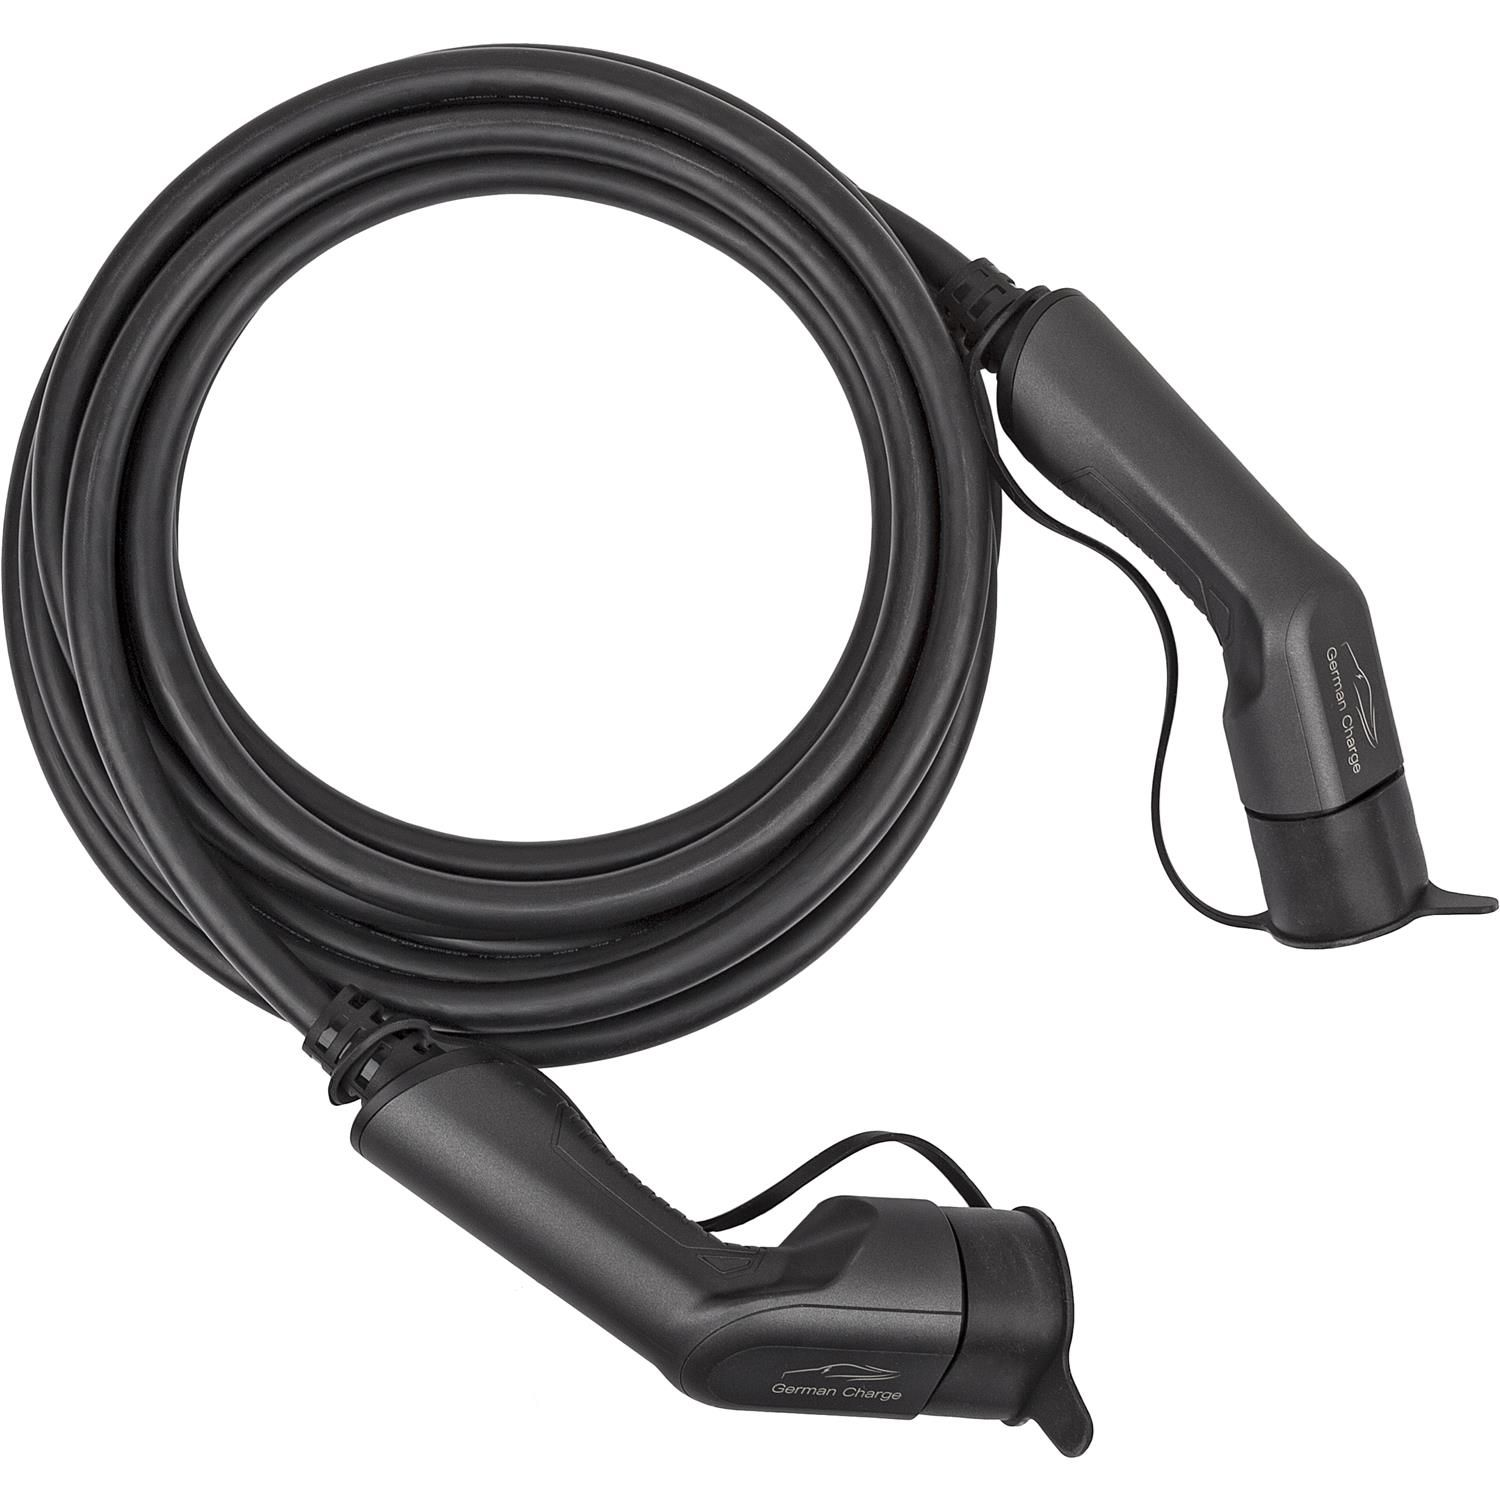 GERMAN CHARGE Komfort-Ladekabel für E-Autos Typ Universal, 2 schwarz Ladegeräte